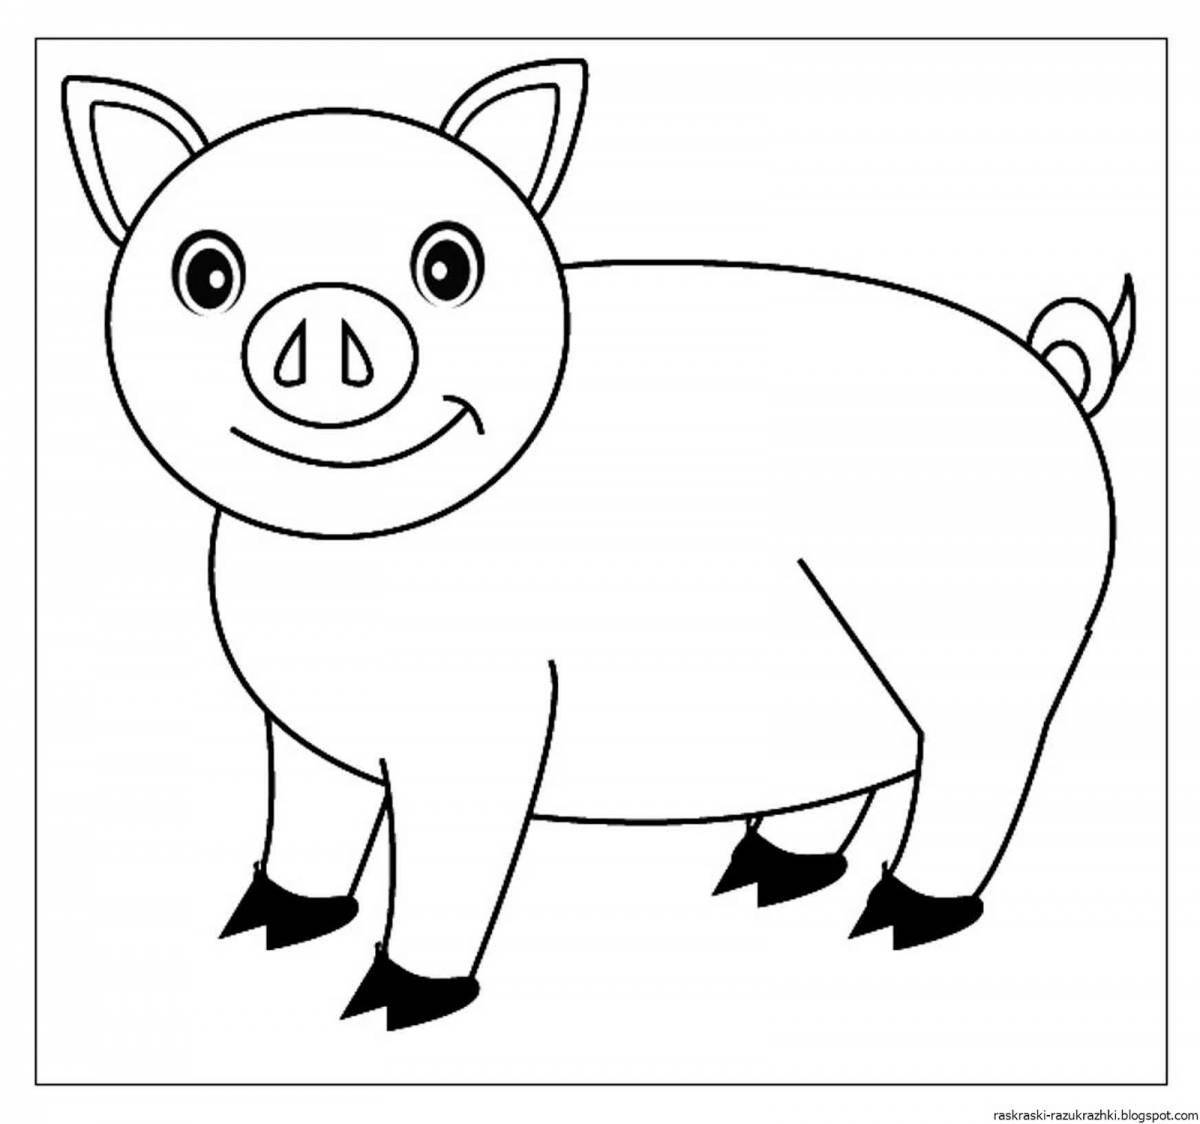 Яркая раскраска свинка для детей